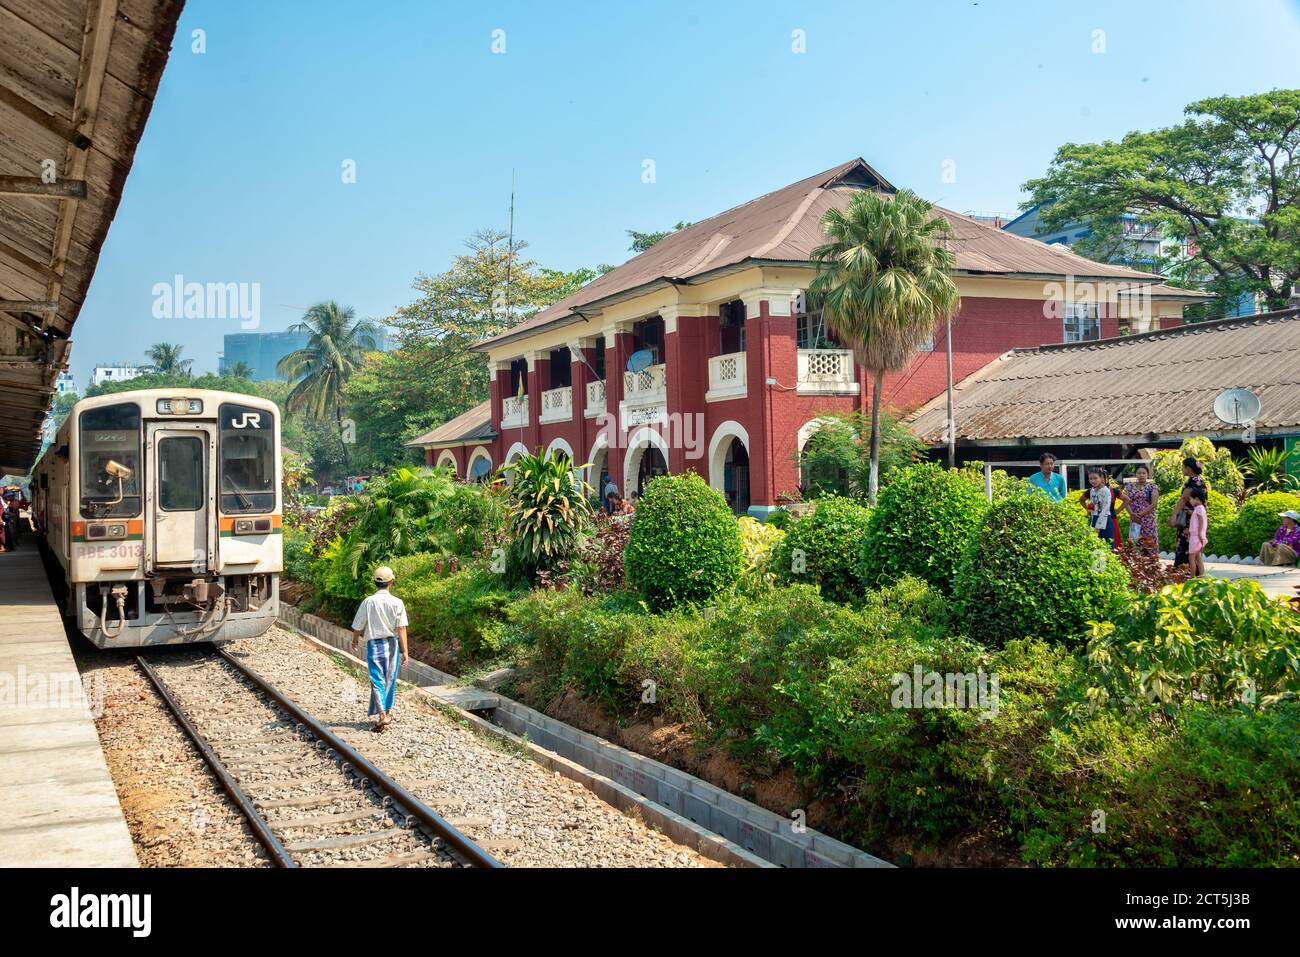 Gare du train circulaire, bâtiment colonial, Yangon Birmanie, Myanmar Banque D'Images